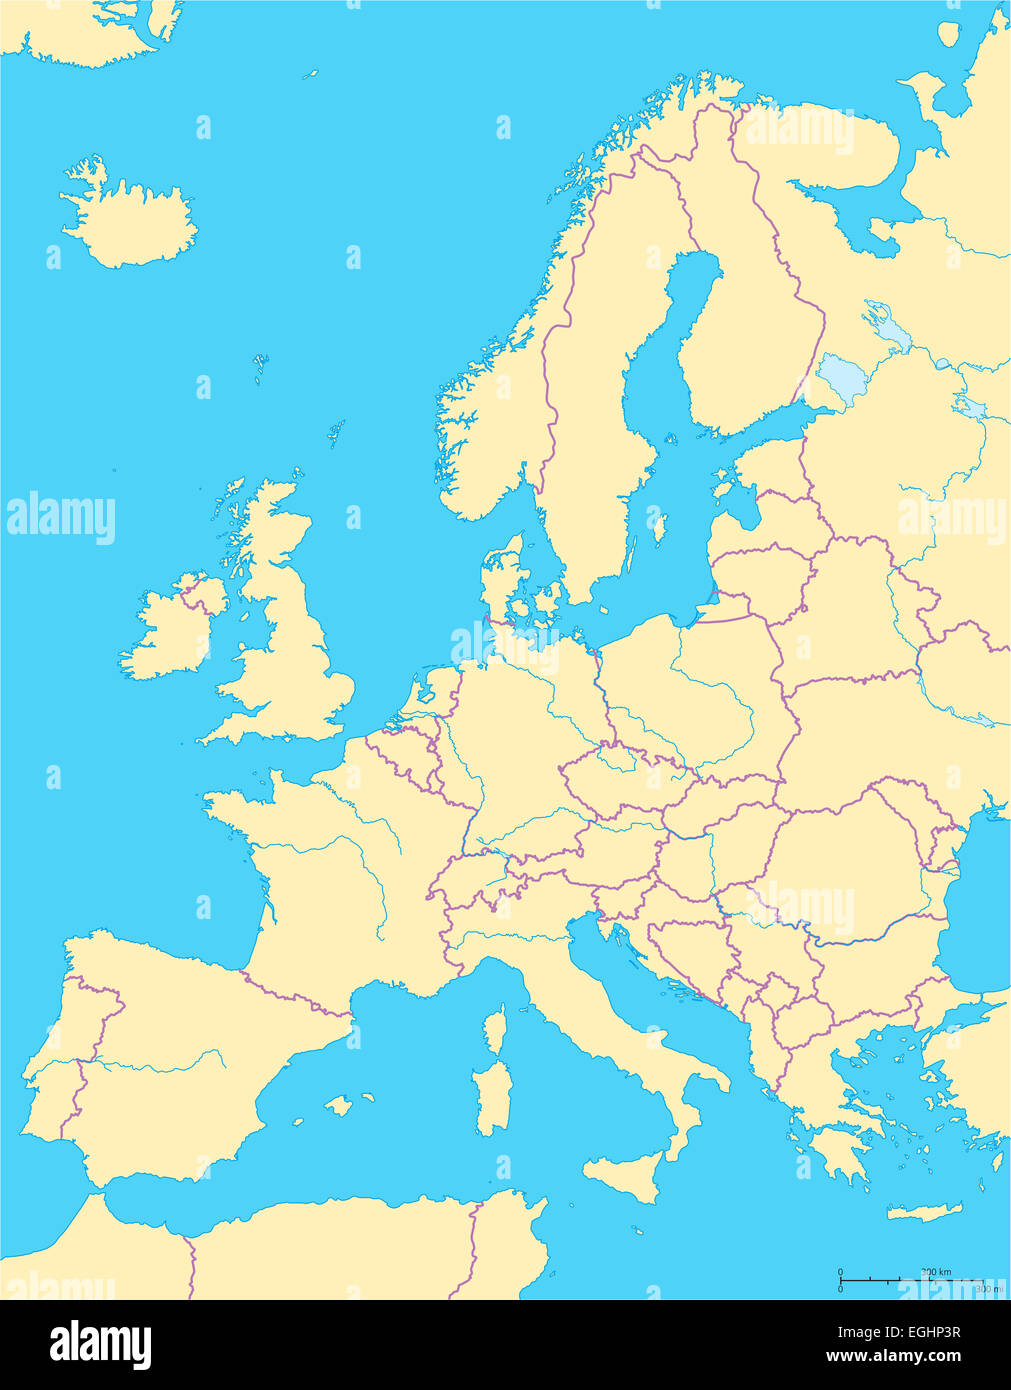 Europa mappa politico e la regione circostante. I paesi con le frontiere nazionali, i grandi fiumi e laghi. Ridimensionamento in inglese. Foto Stock